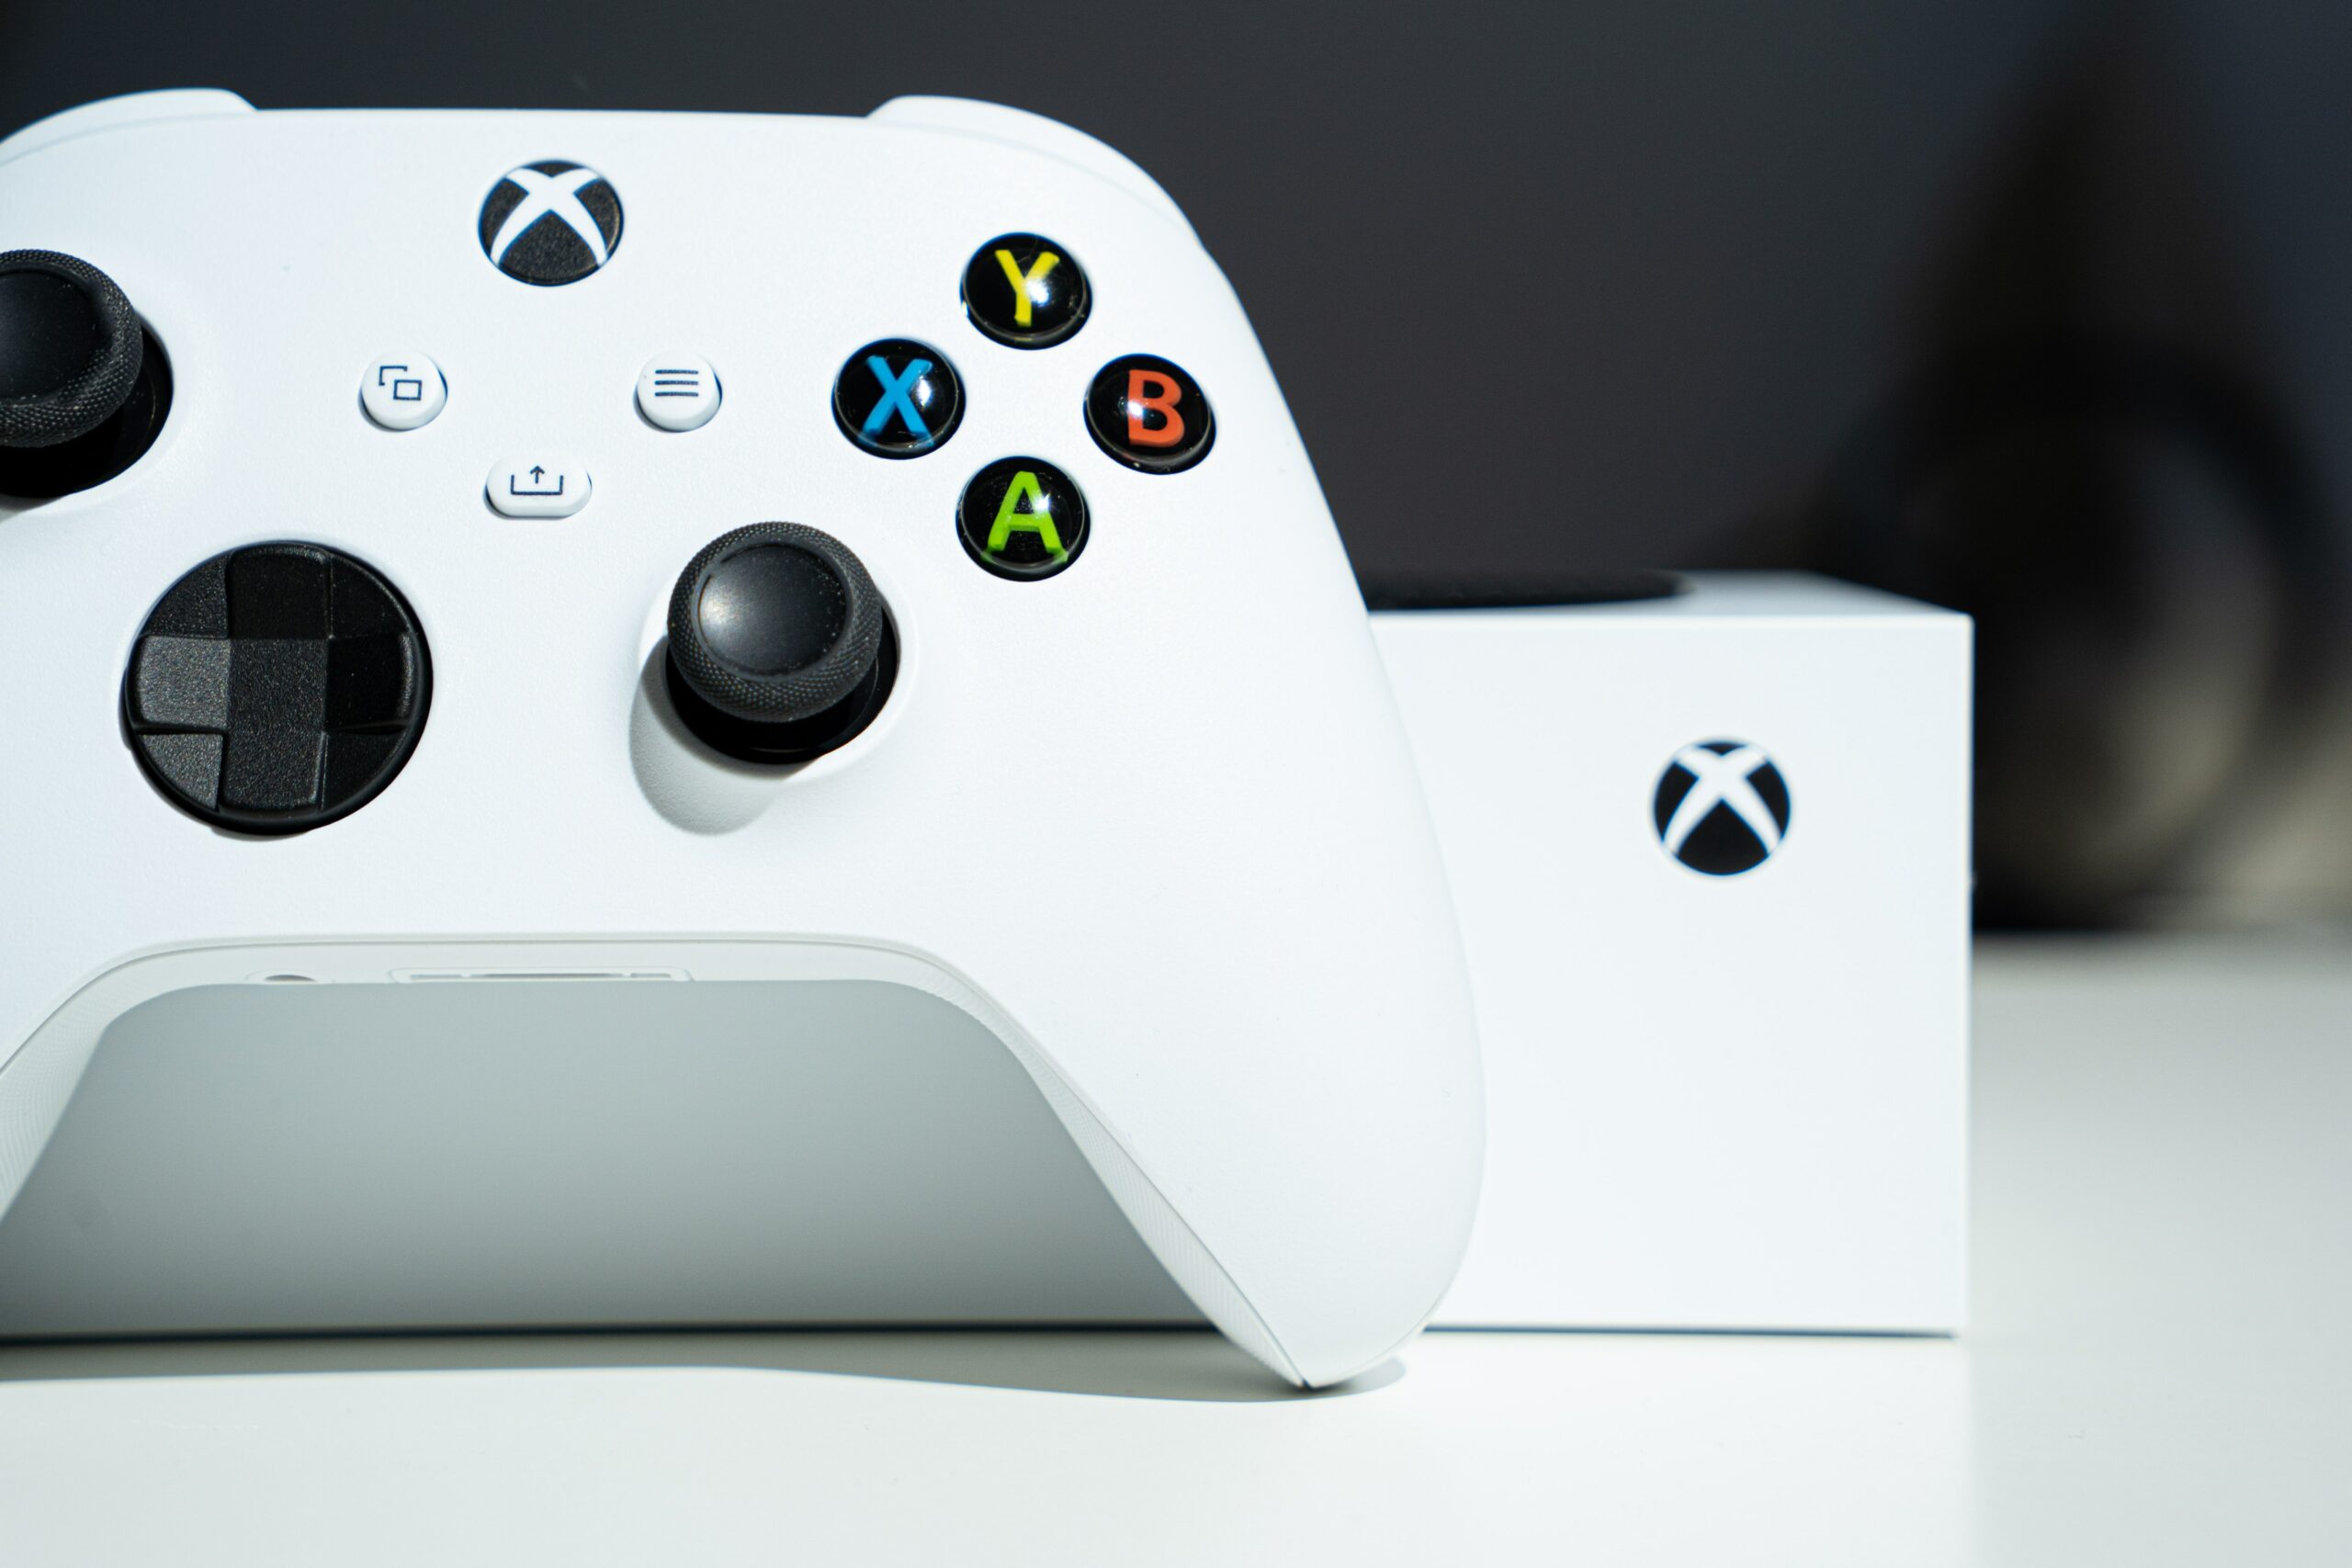 Xbox Game Pass vai receber três novos jogos em dezembro 